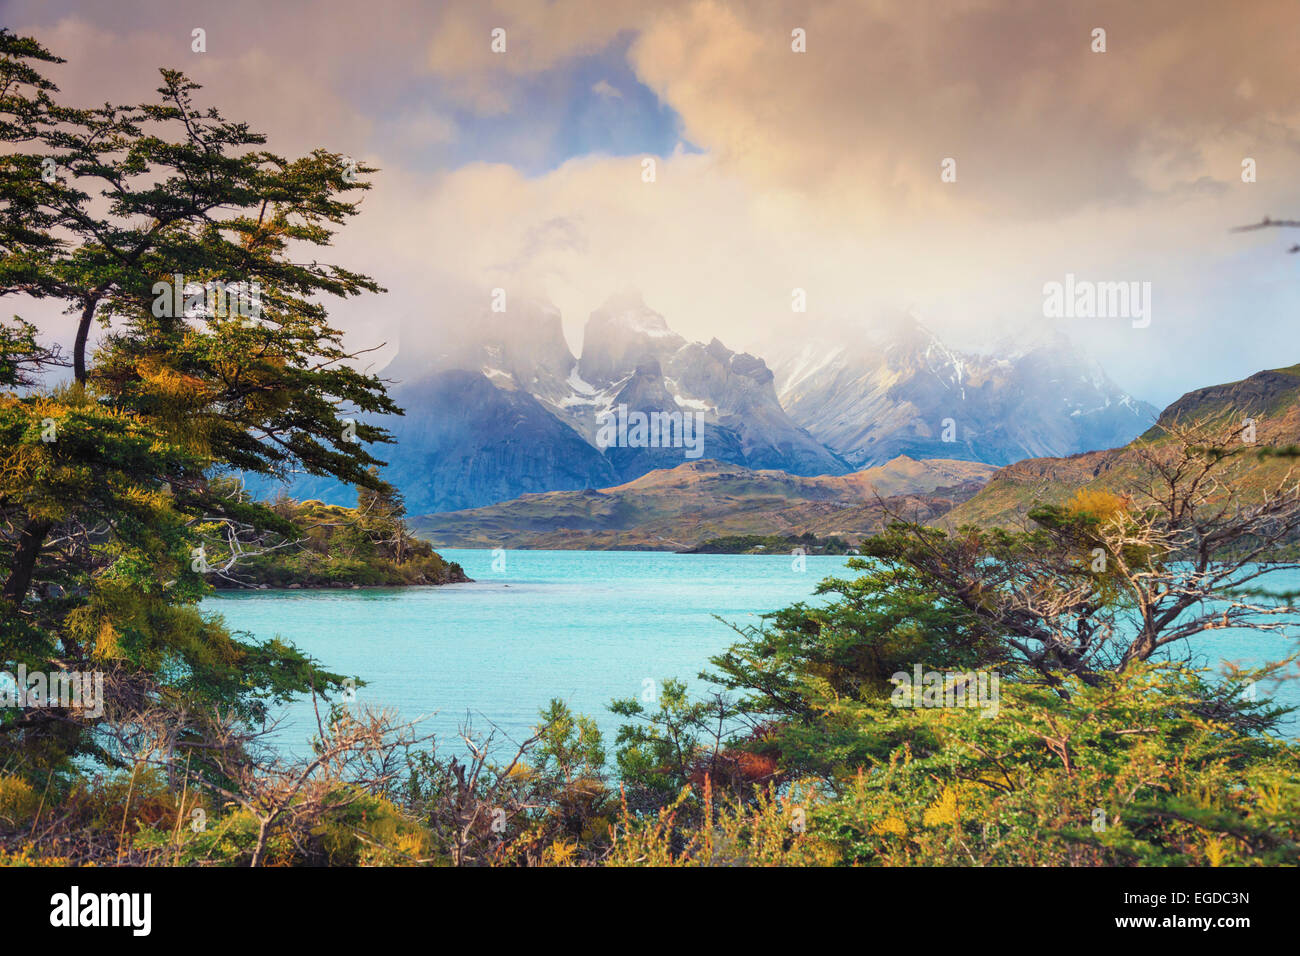 Il Cile, Patagonia, parco nazionale Torres del Paine (Sito UNESCO), il lago Peohe Foto Stock